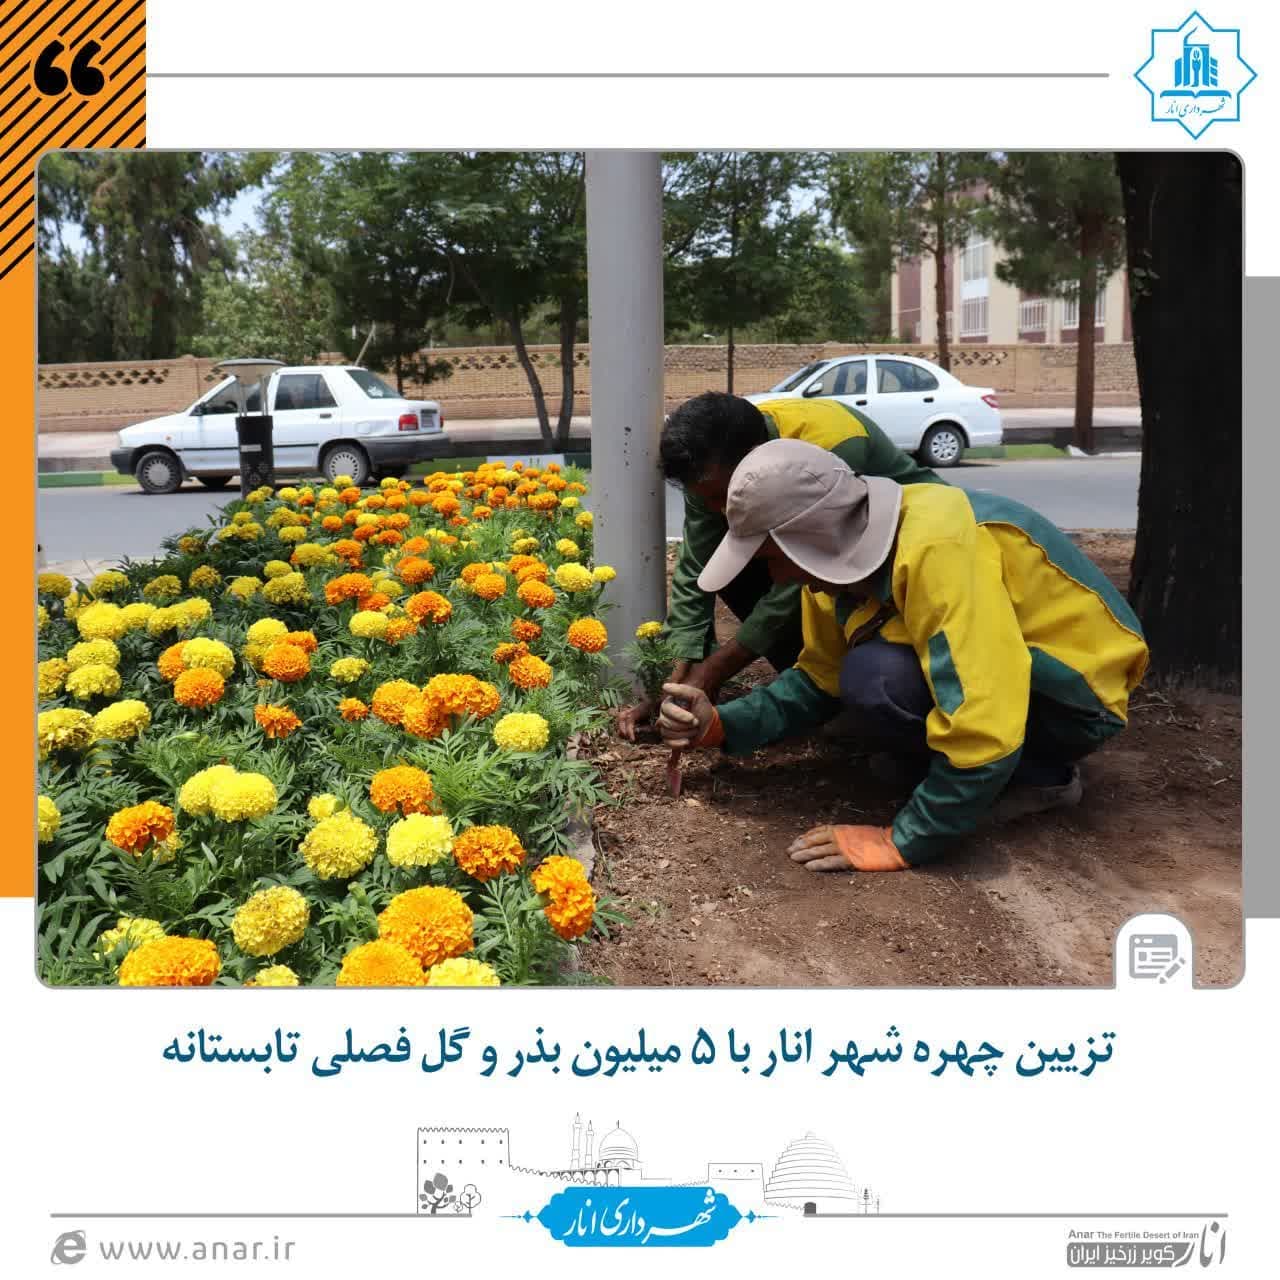 تزیین چهره شهر انار با ۵ میلیون بذر و گل فصلی تابستانه